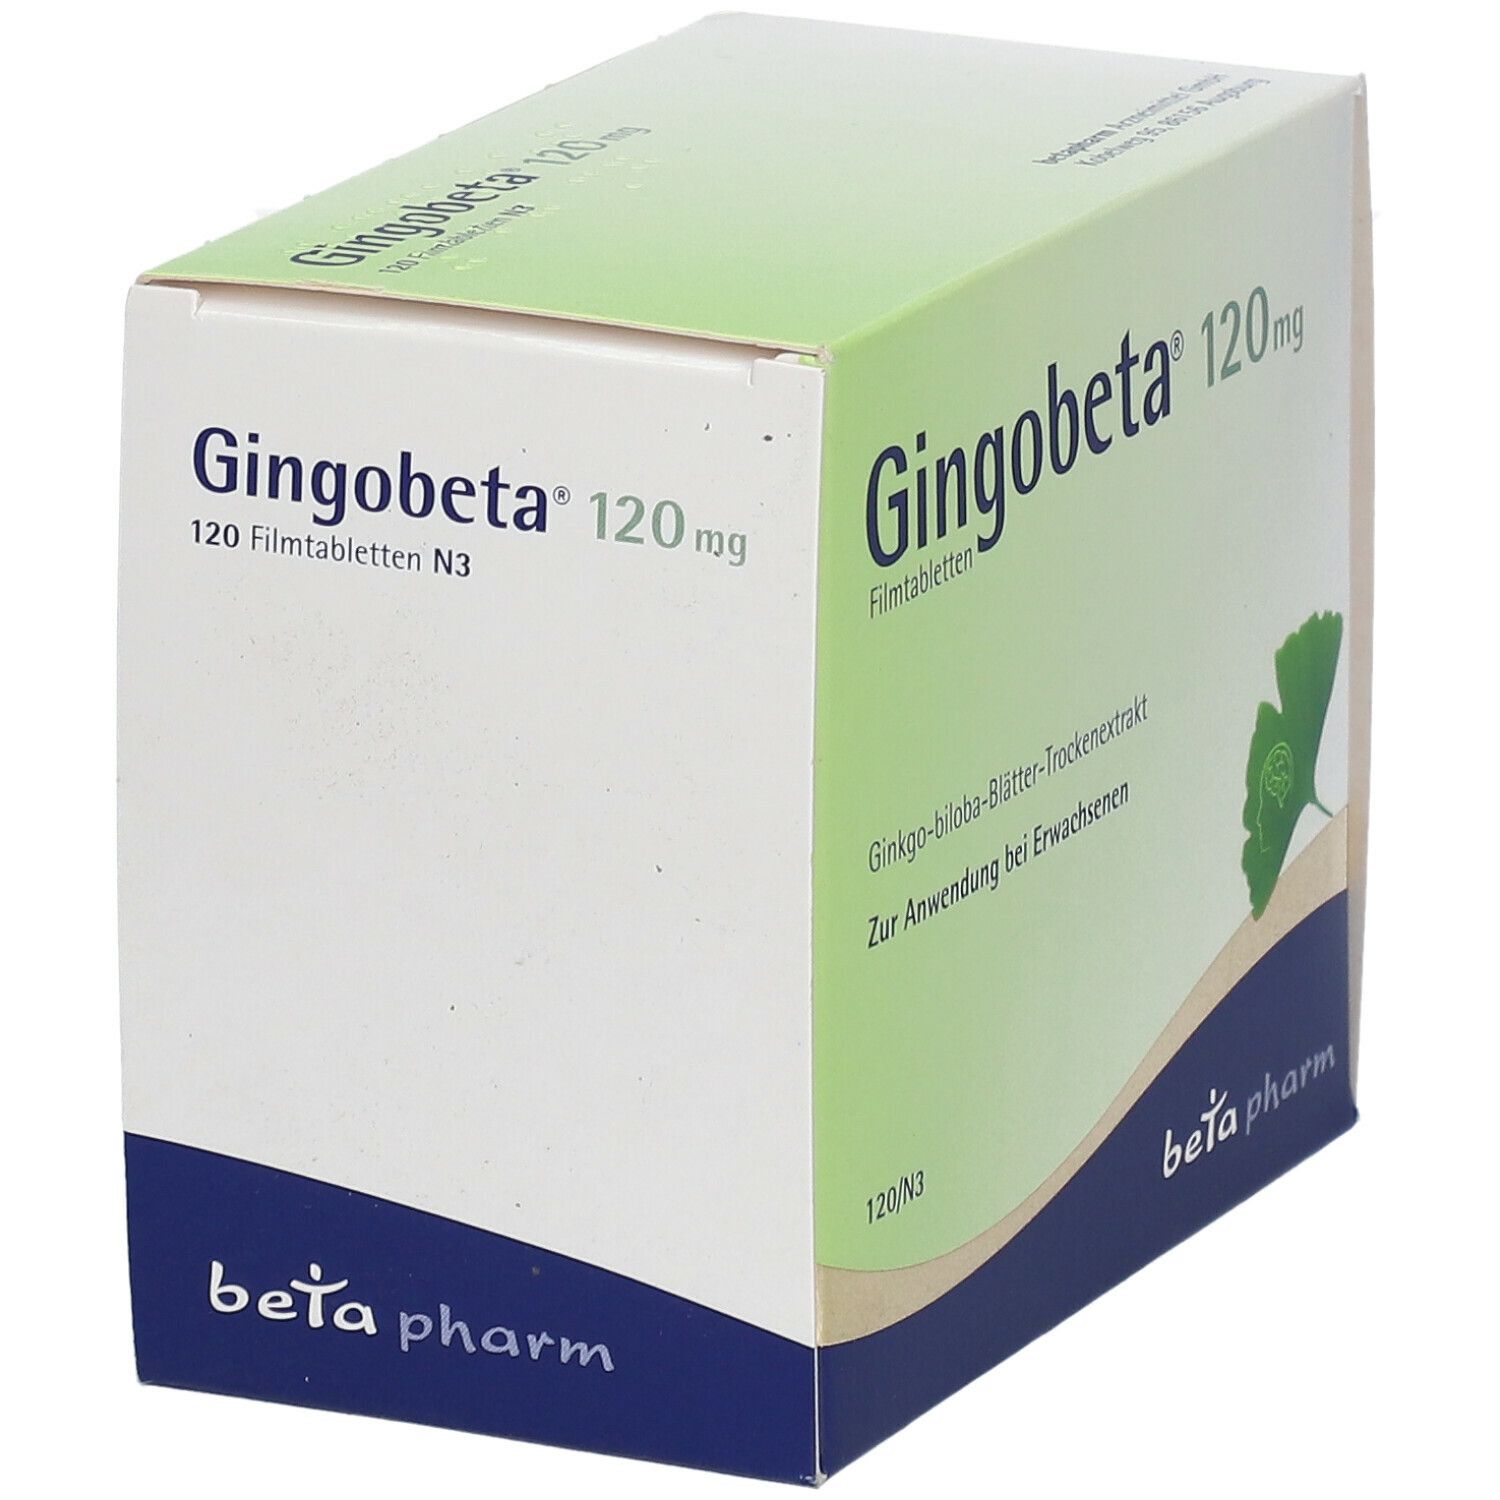 Gingobeta® 120 mg